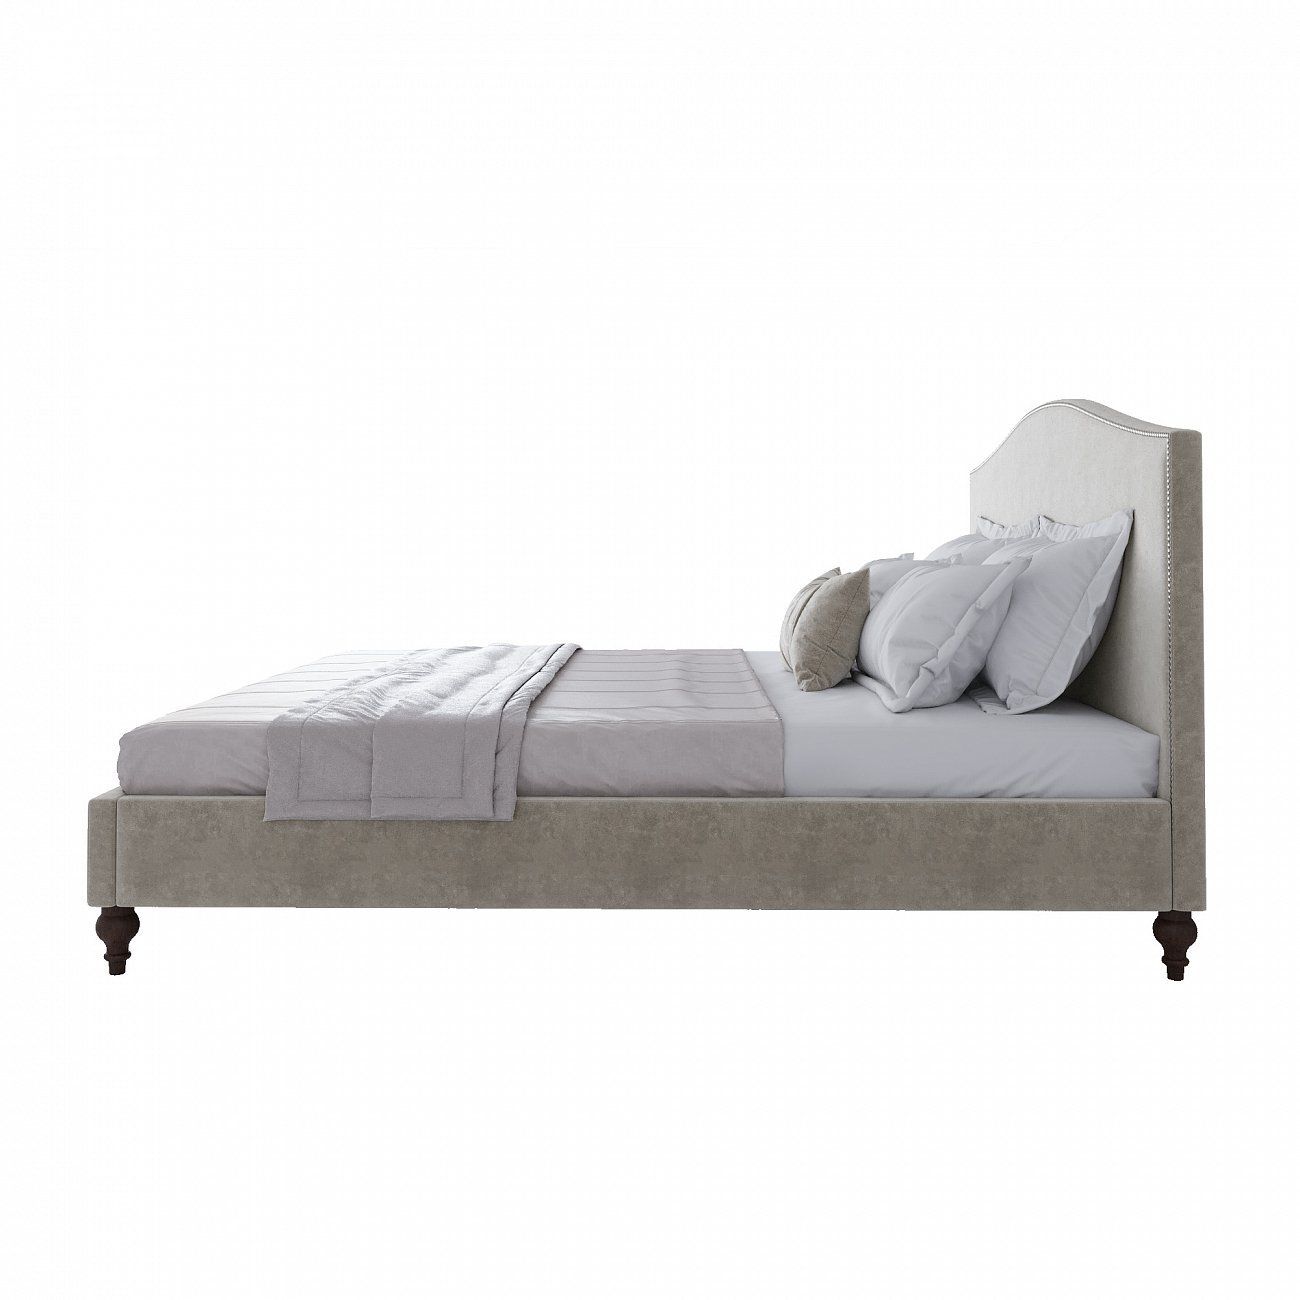 Double bed 180x200 cm grey-beige Fleurie